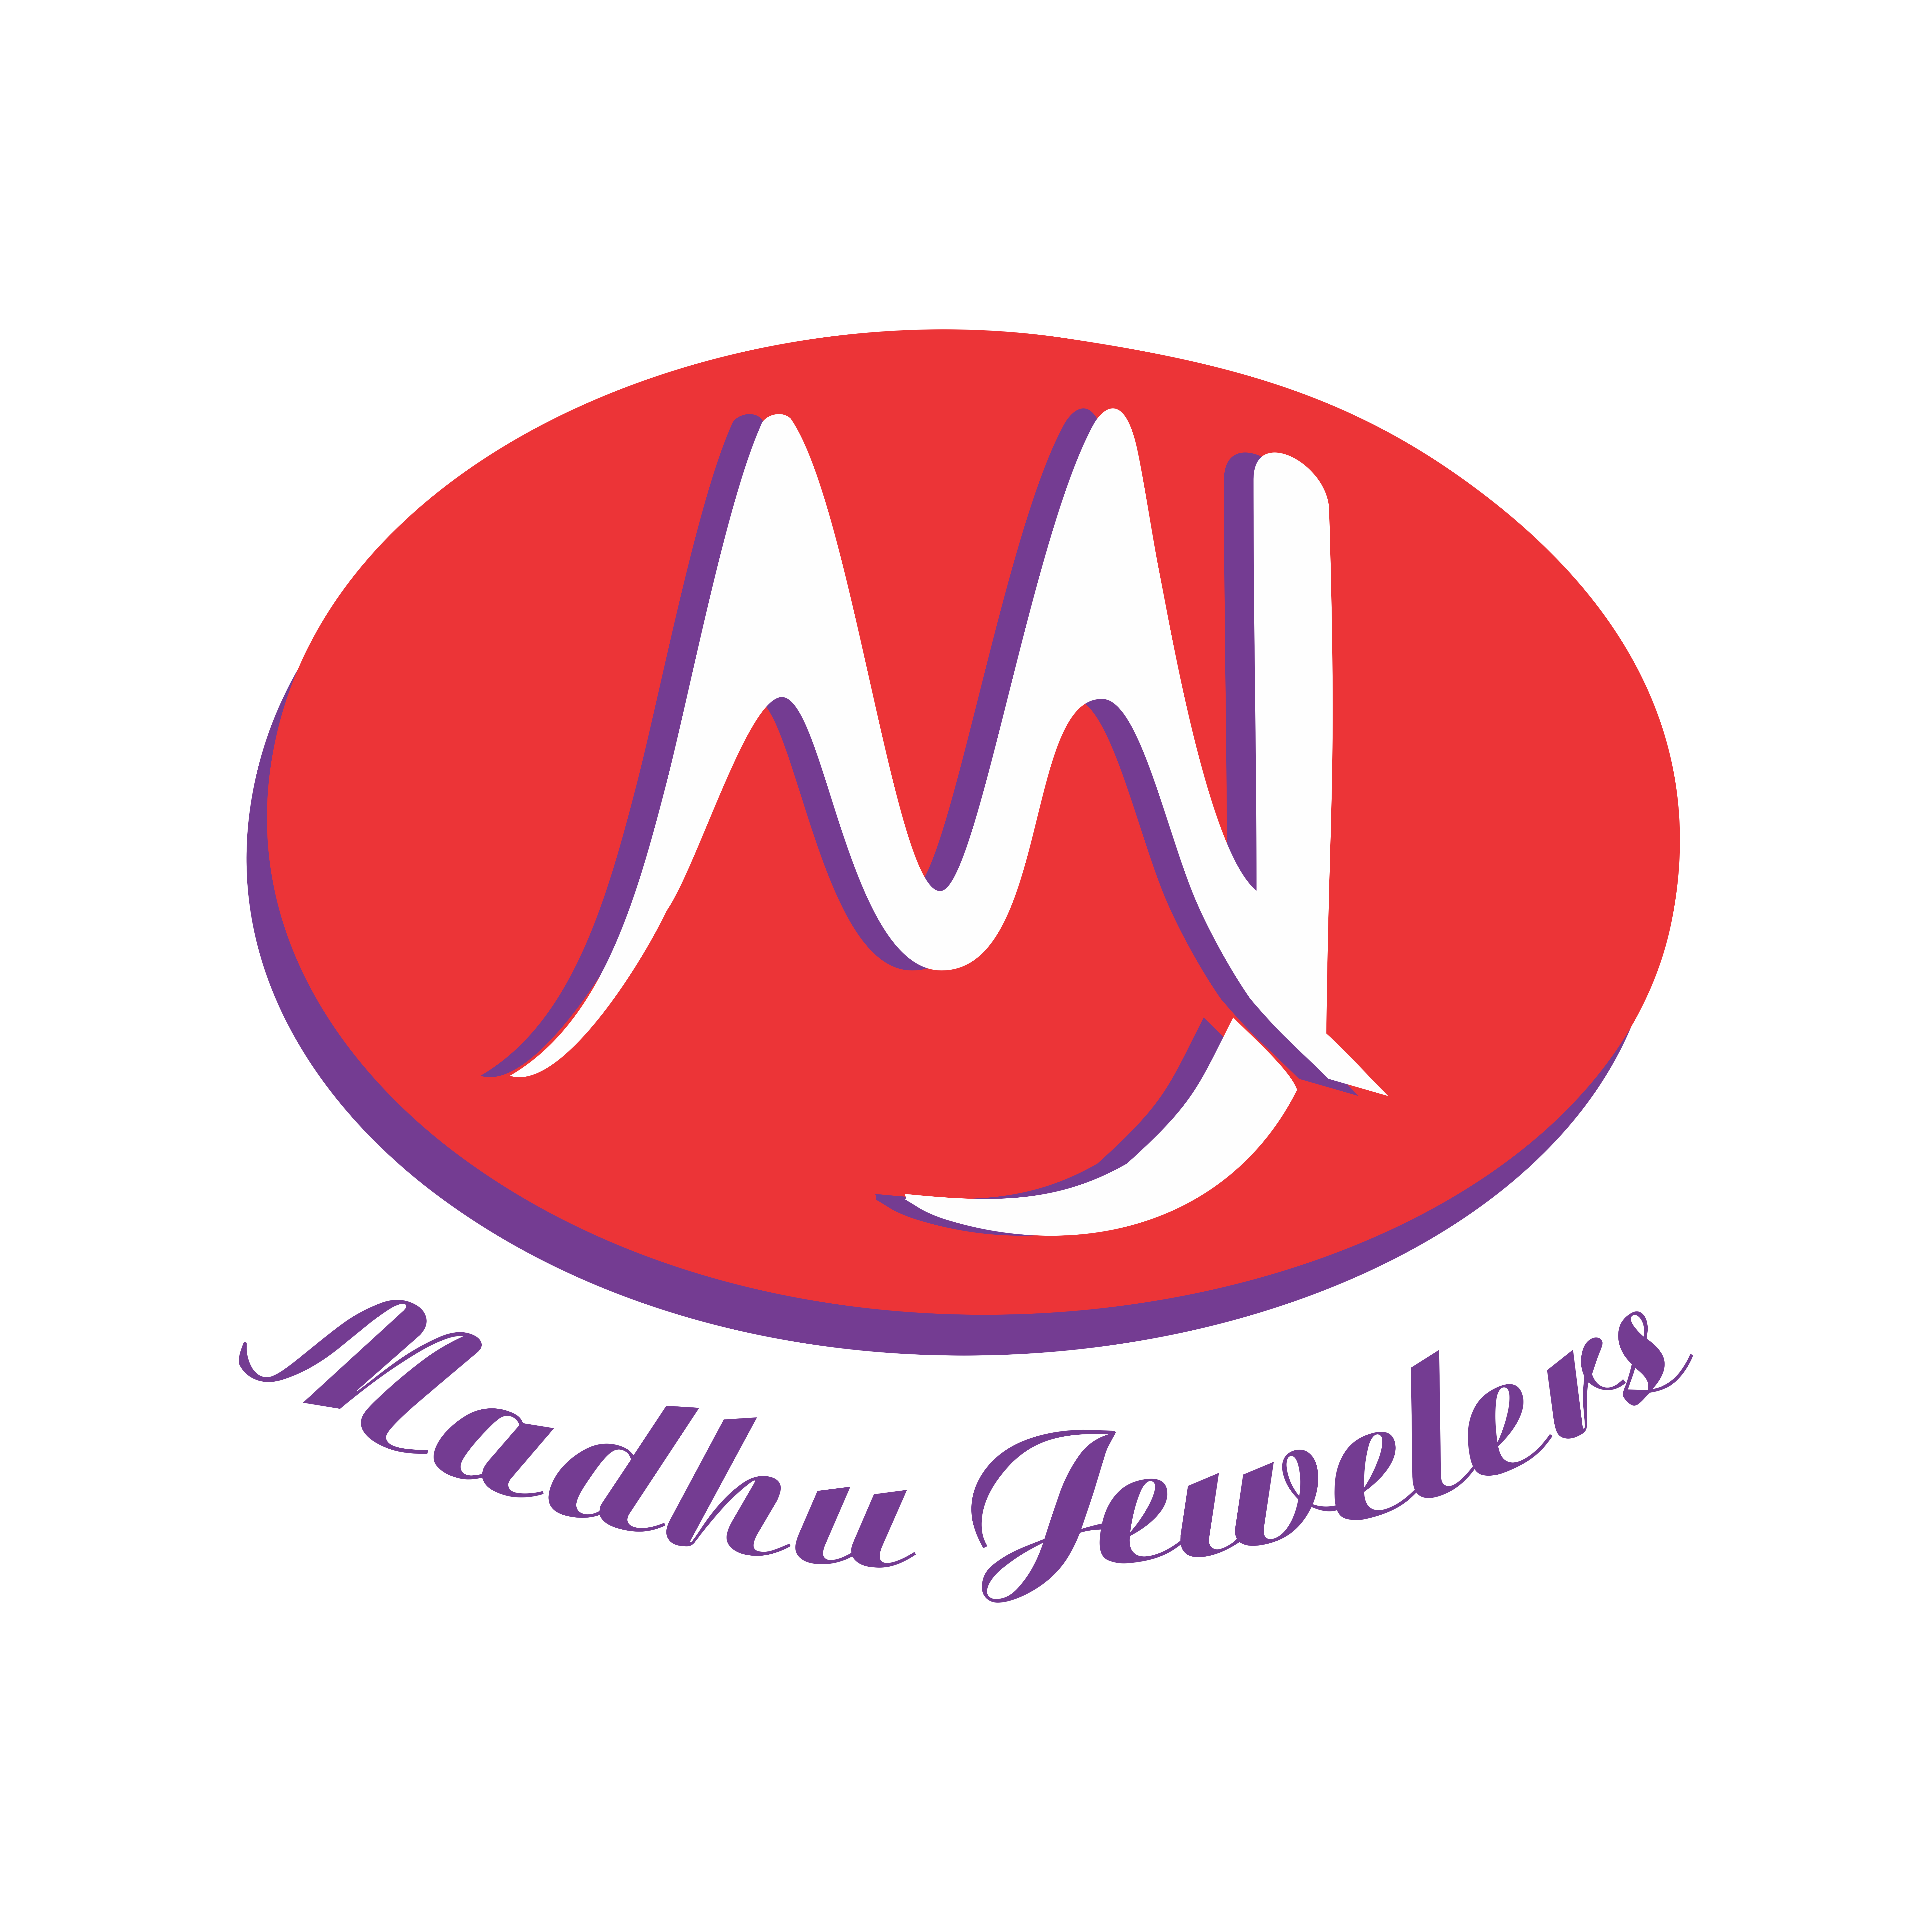 Madhus logo